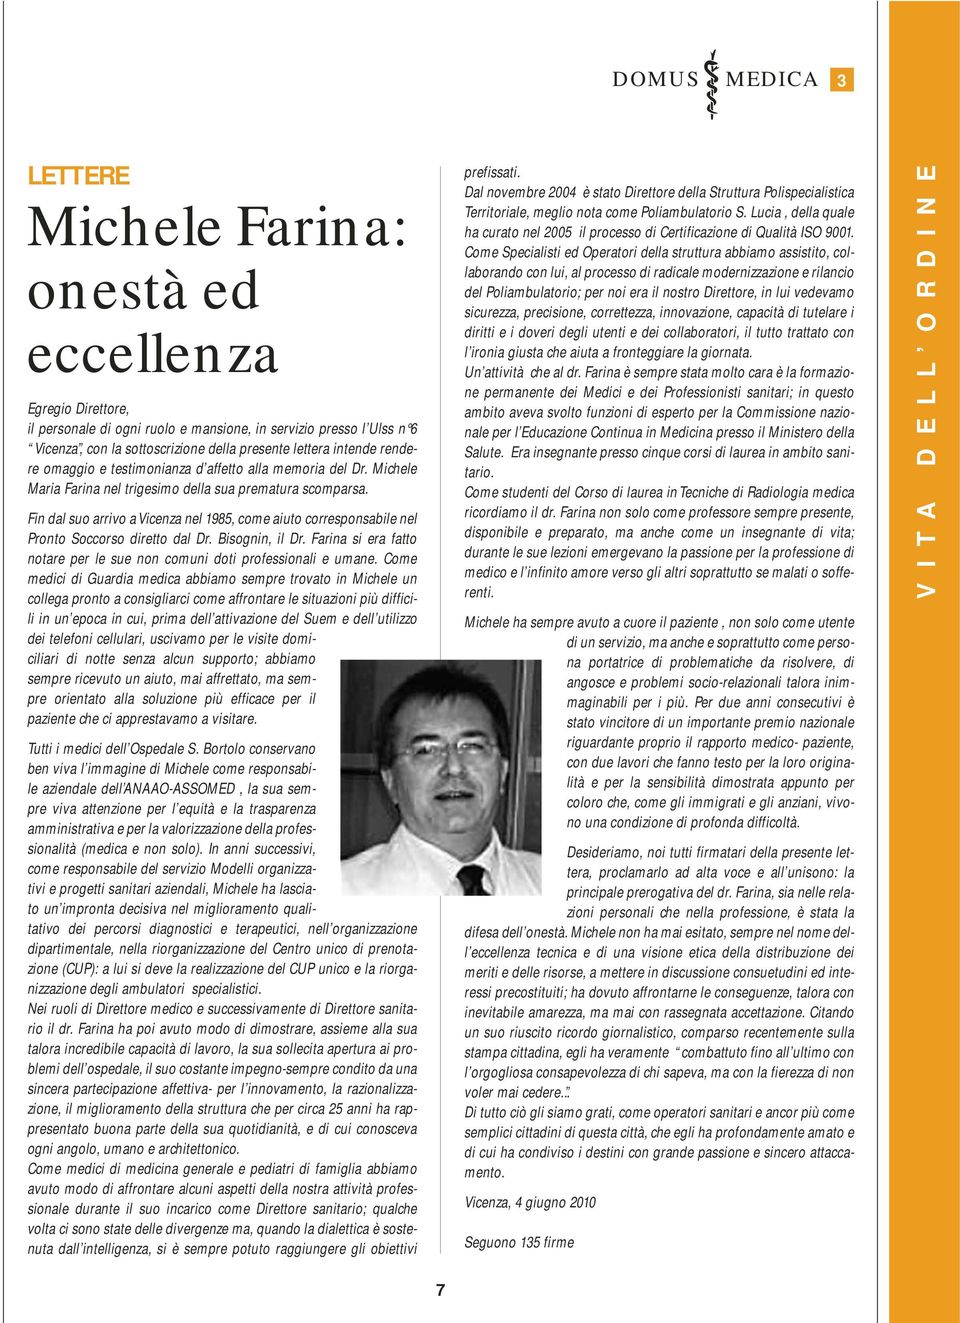 Fin dal suo arrivo a Vicenza nel 1985, come aiuto corresponsabile nel Pronto Soccorso diretto dal Dr. Bisognin, il Dr. Farina si era fatto notare per le sue non comuni doti professionali e umane.